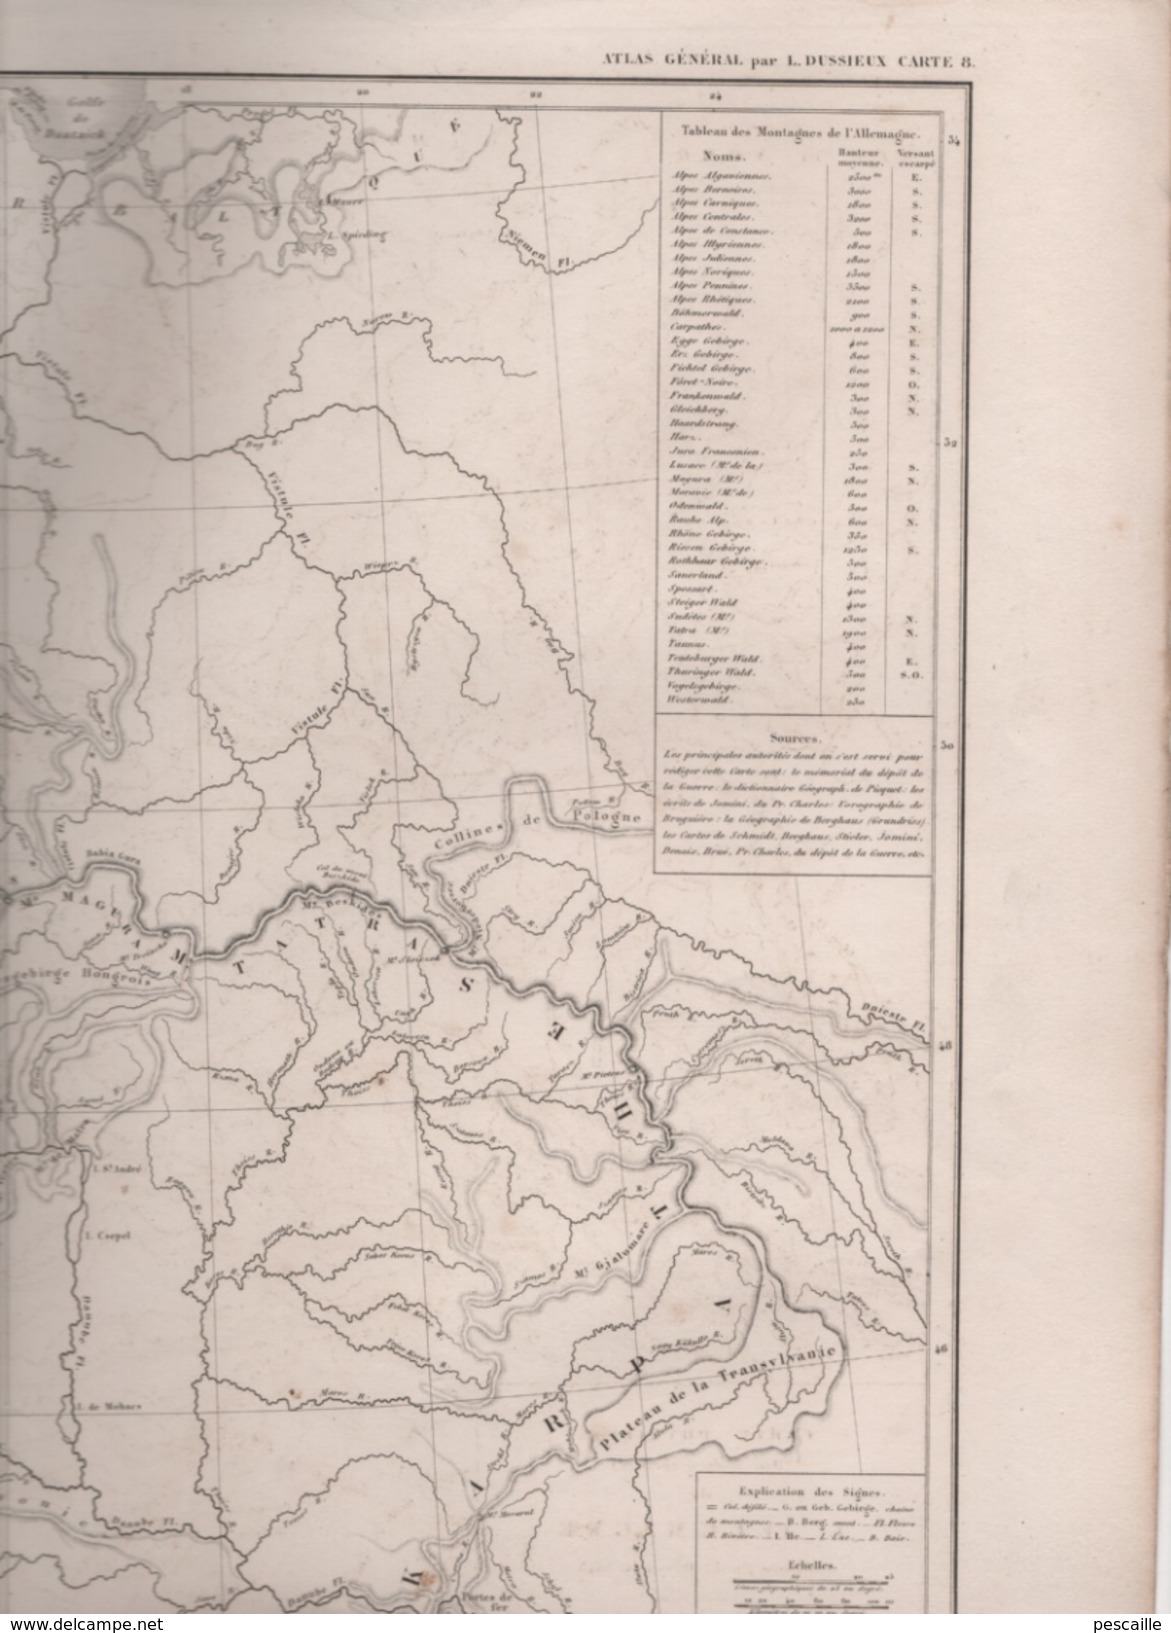 CARTE PHYSIQUE ( ORO-HYDROGRAPHIQUE ) DE L' ALLEMAGNE DRESSEE PAR L DUSSIEUX EN 1845 - TABLEAU DES MONTAGNES - Landkarten